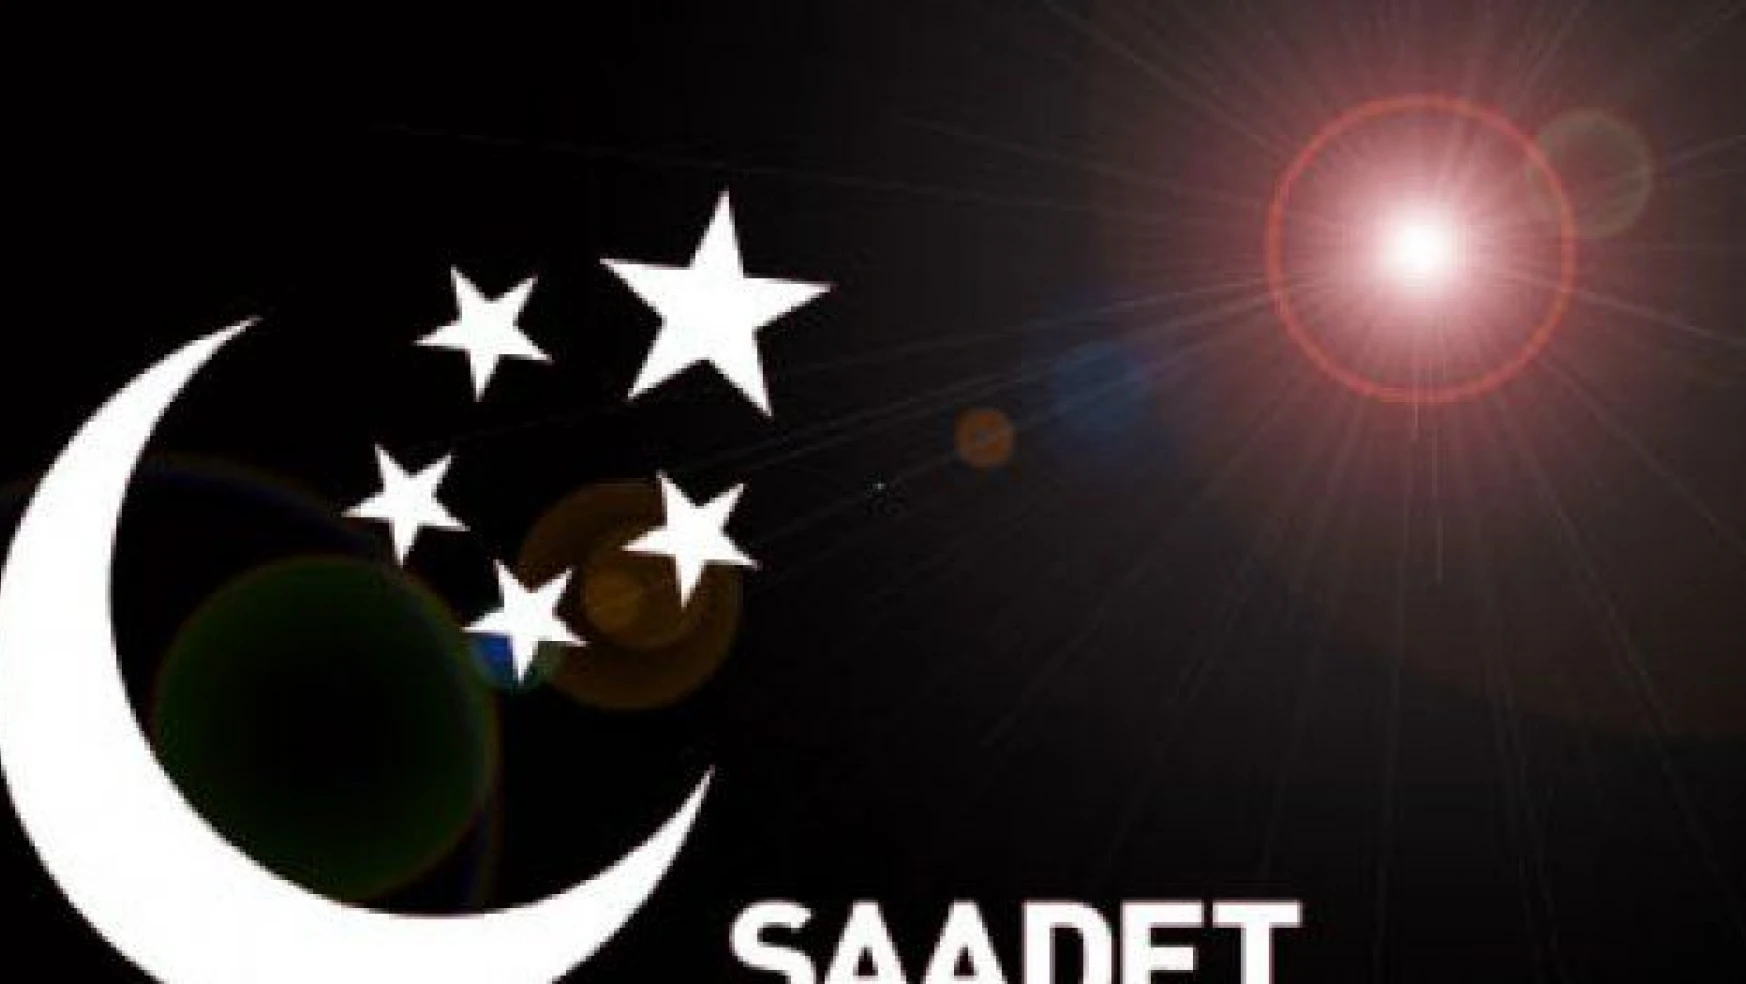 Saadet'in oyları AK Parti'ye akmış!